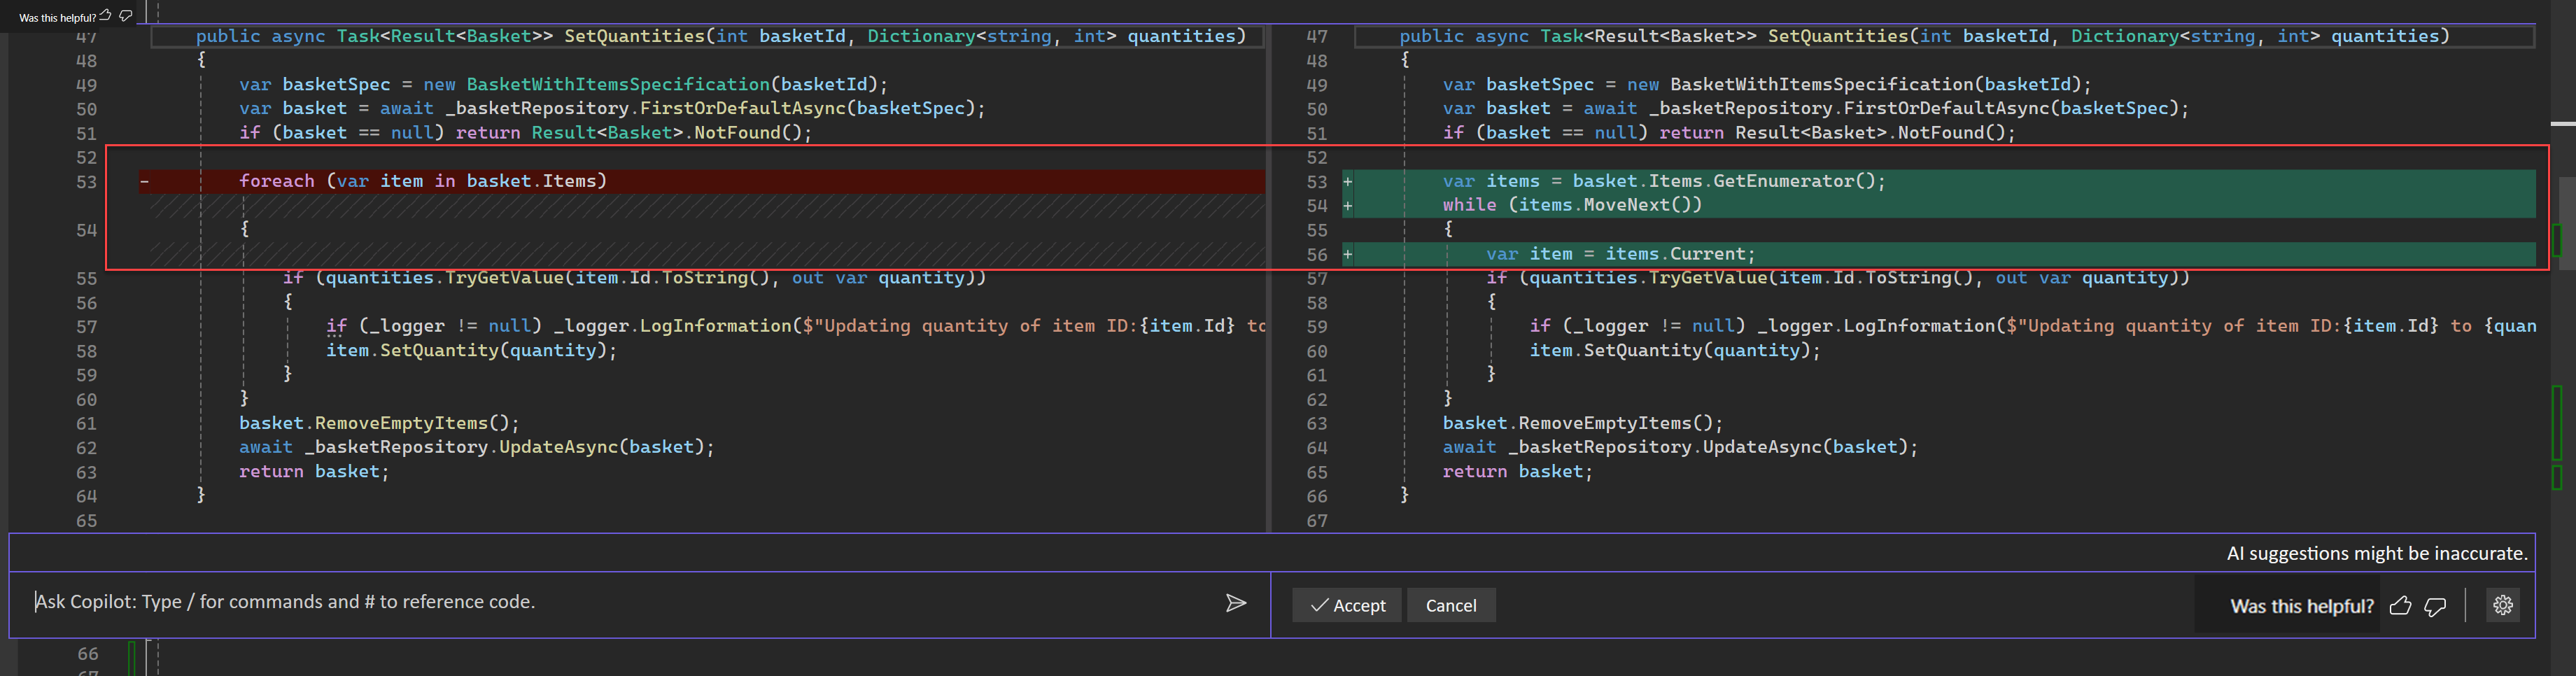 Screenshot der Codevorschläge in der Diff-Ansicht von Visual Studio.